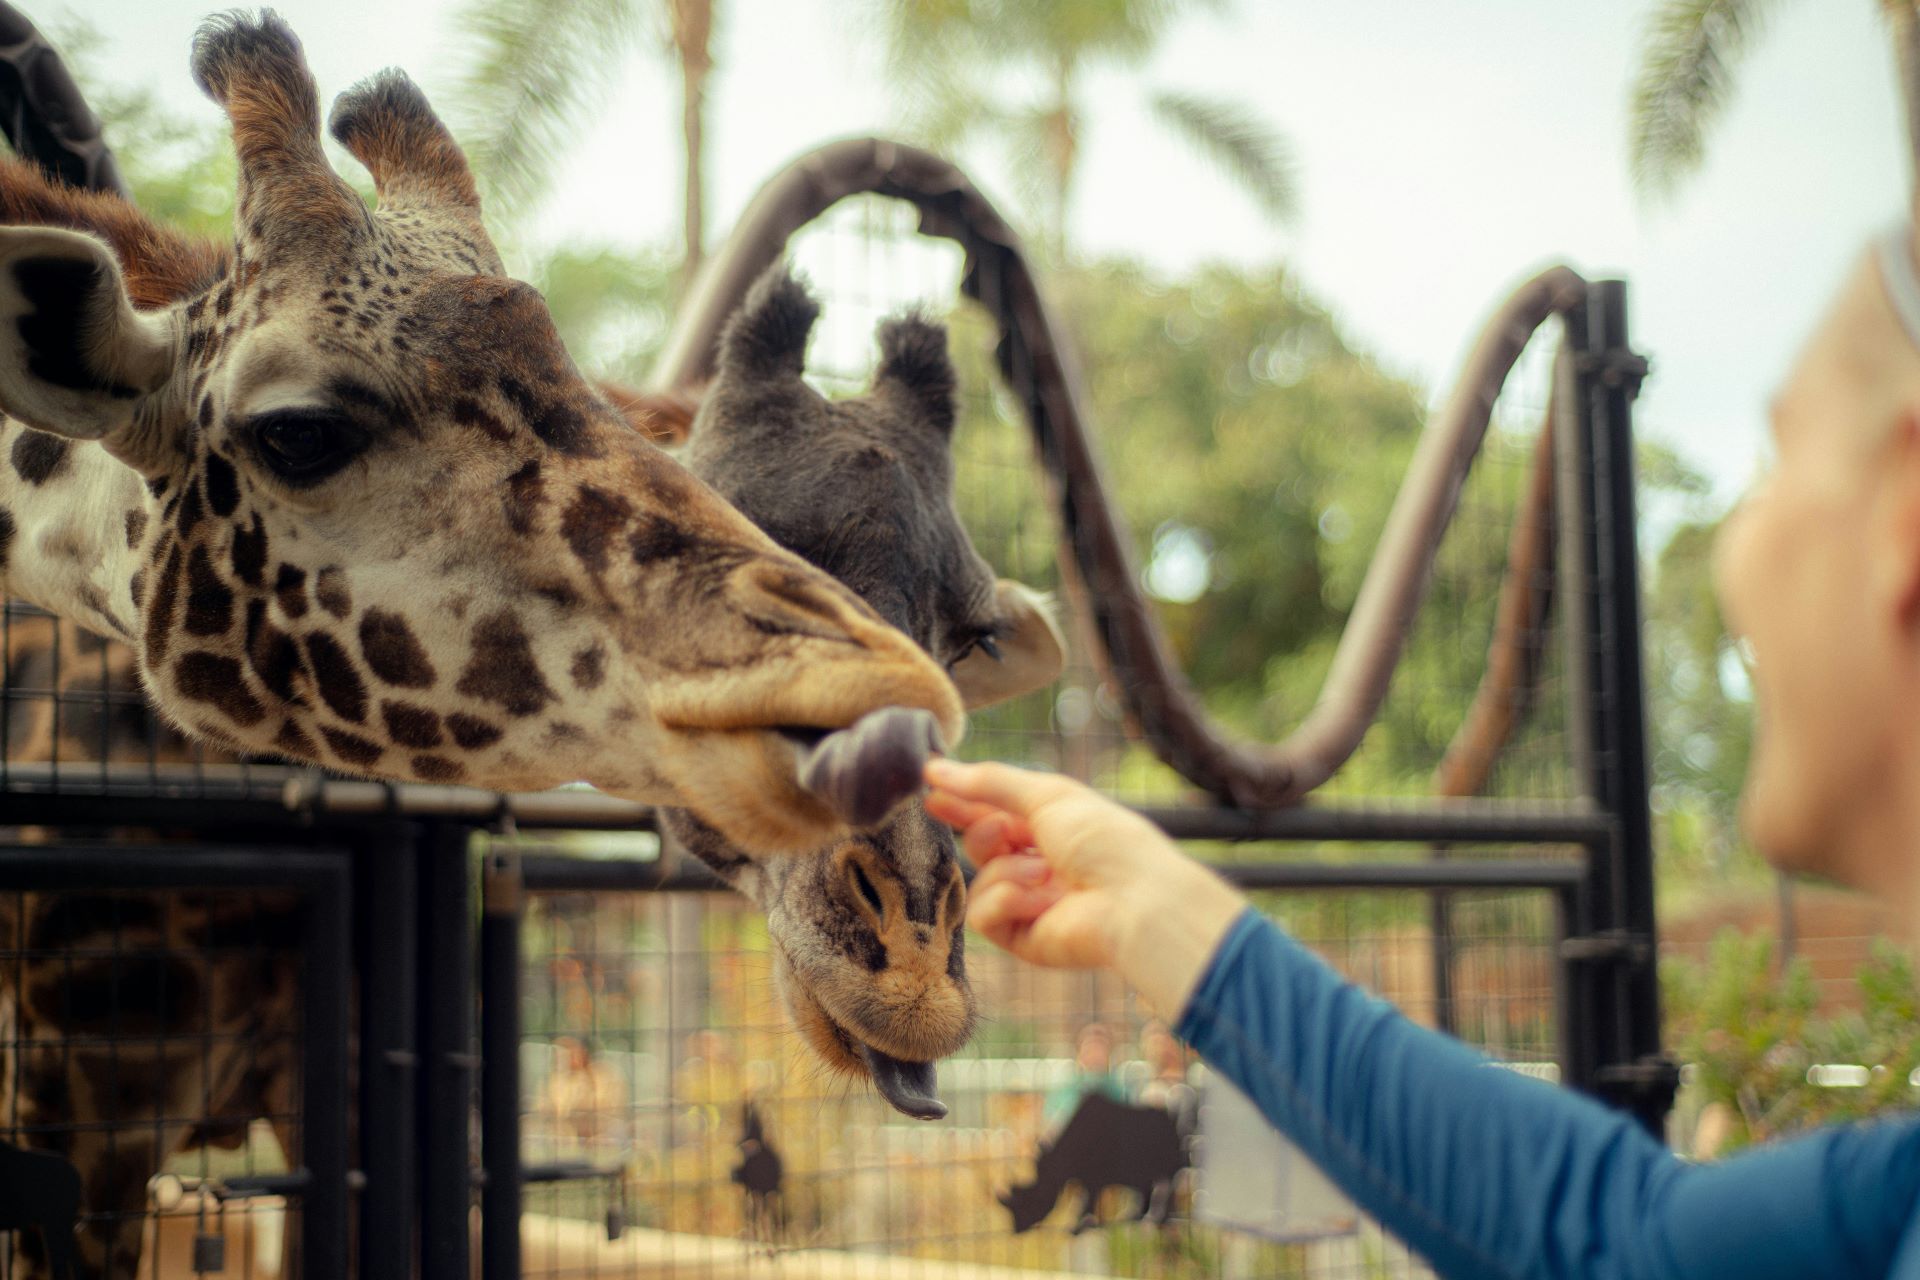 Feeding Giraffes at San Diego Zoo